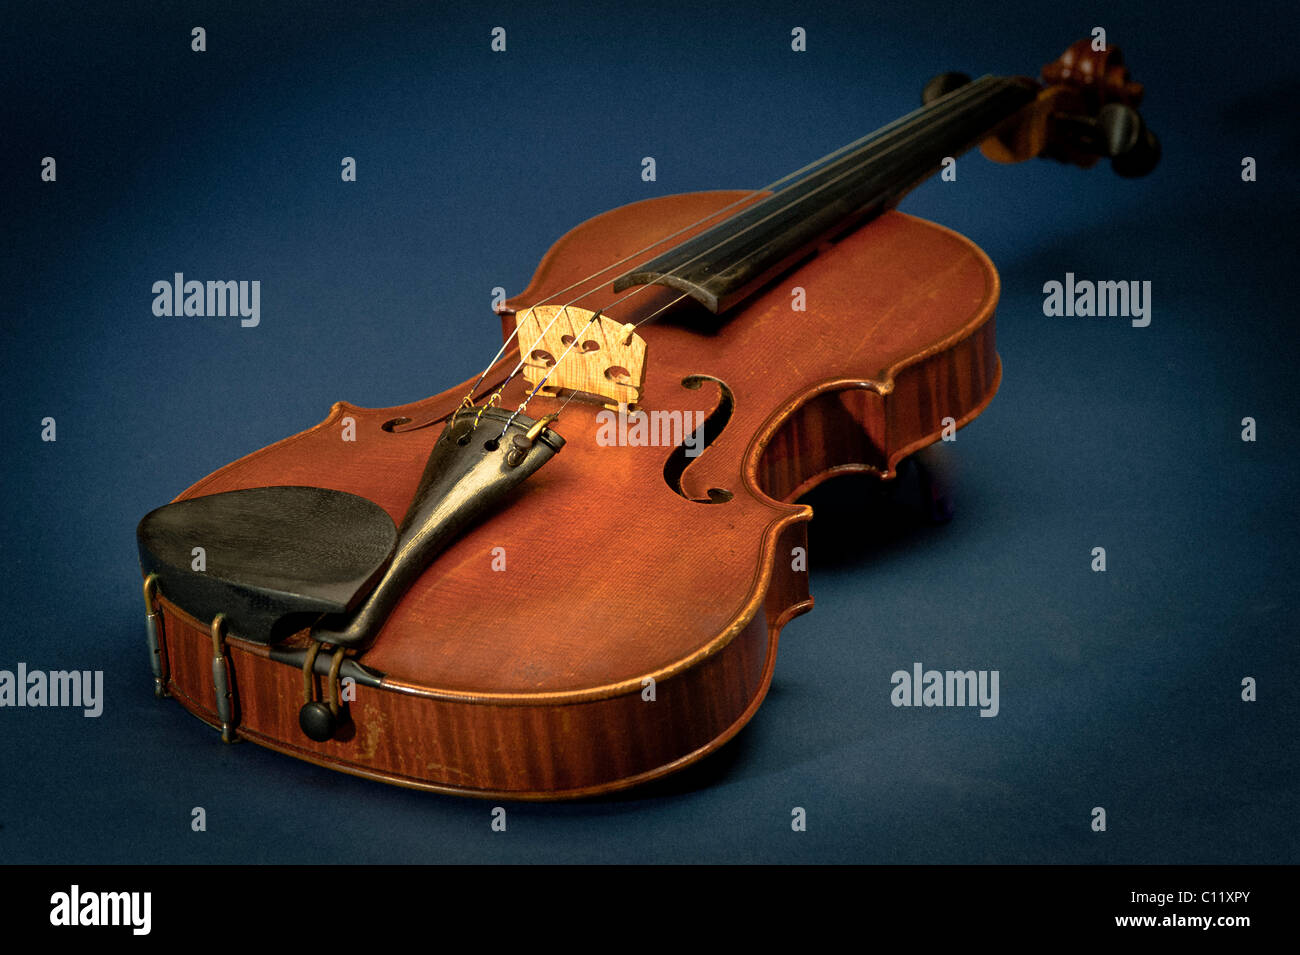 Fiddle, violin Stock Photo